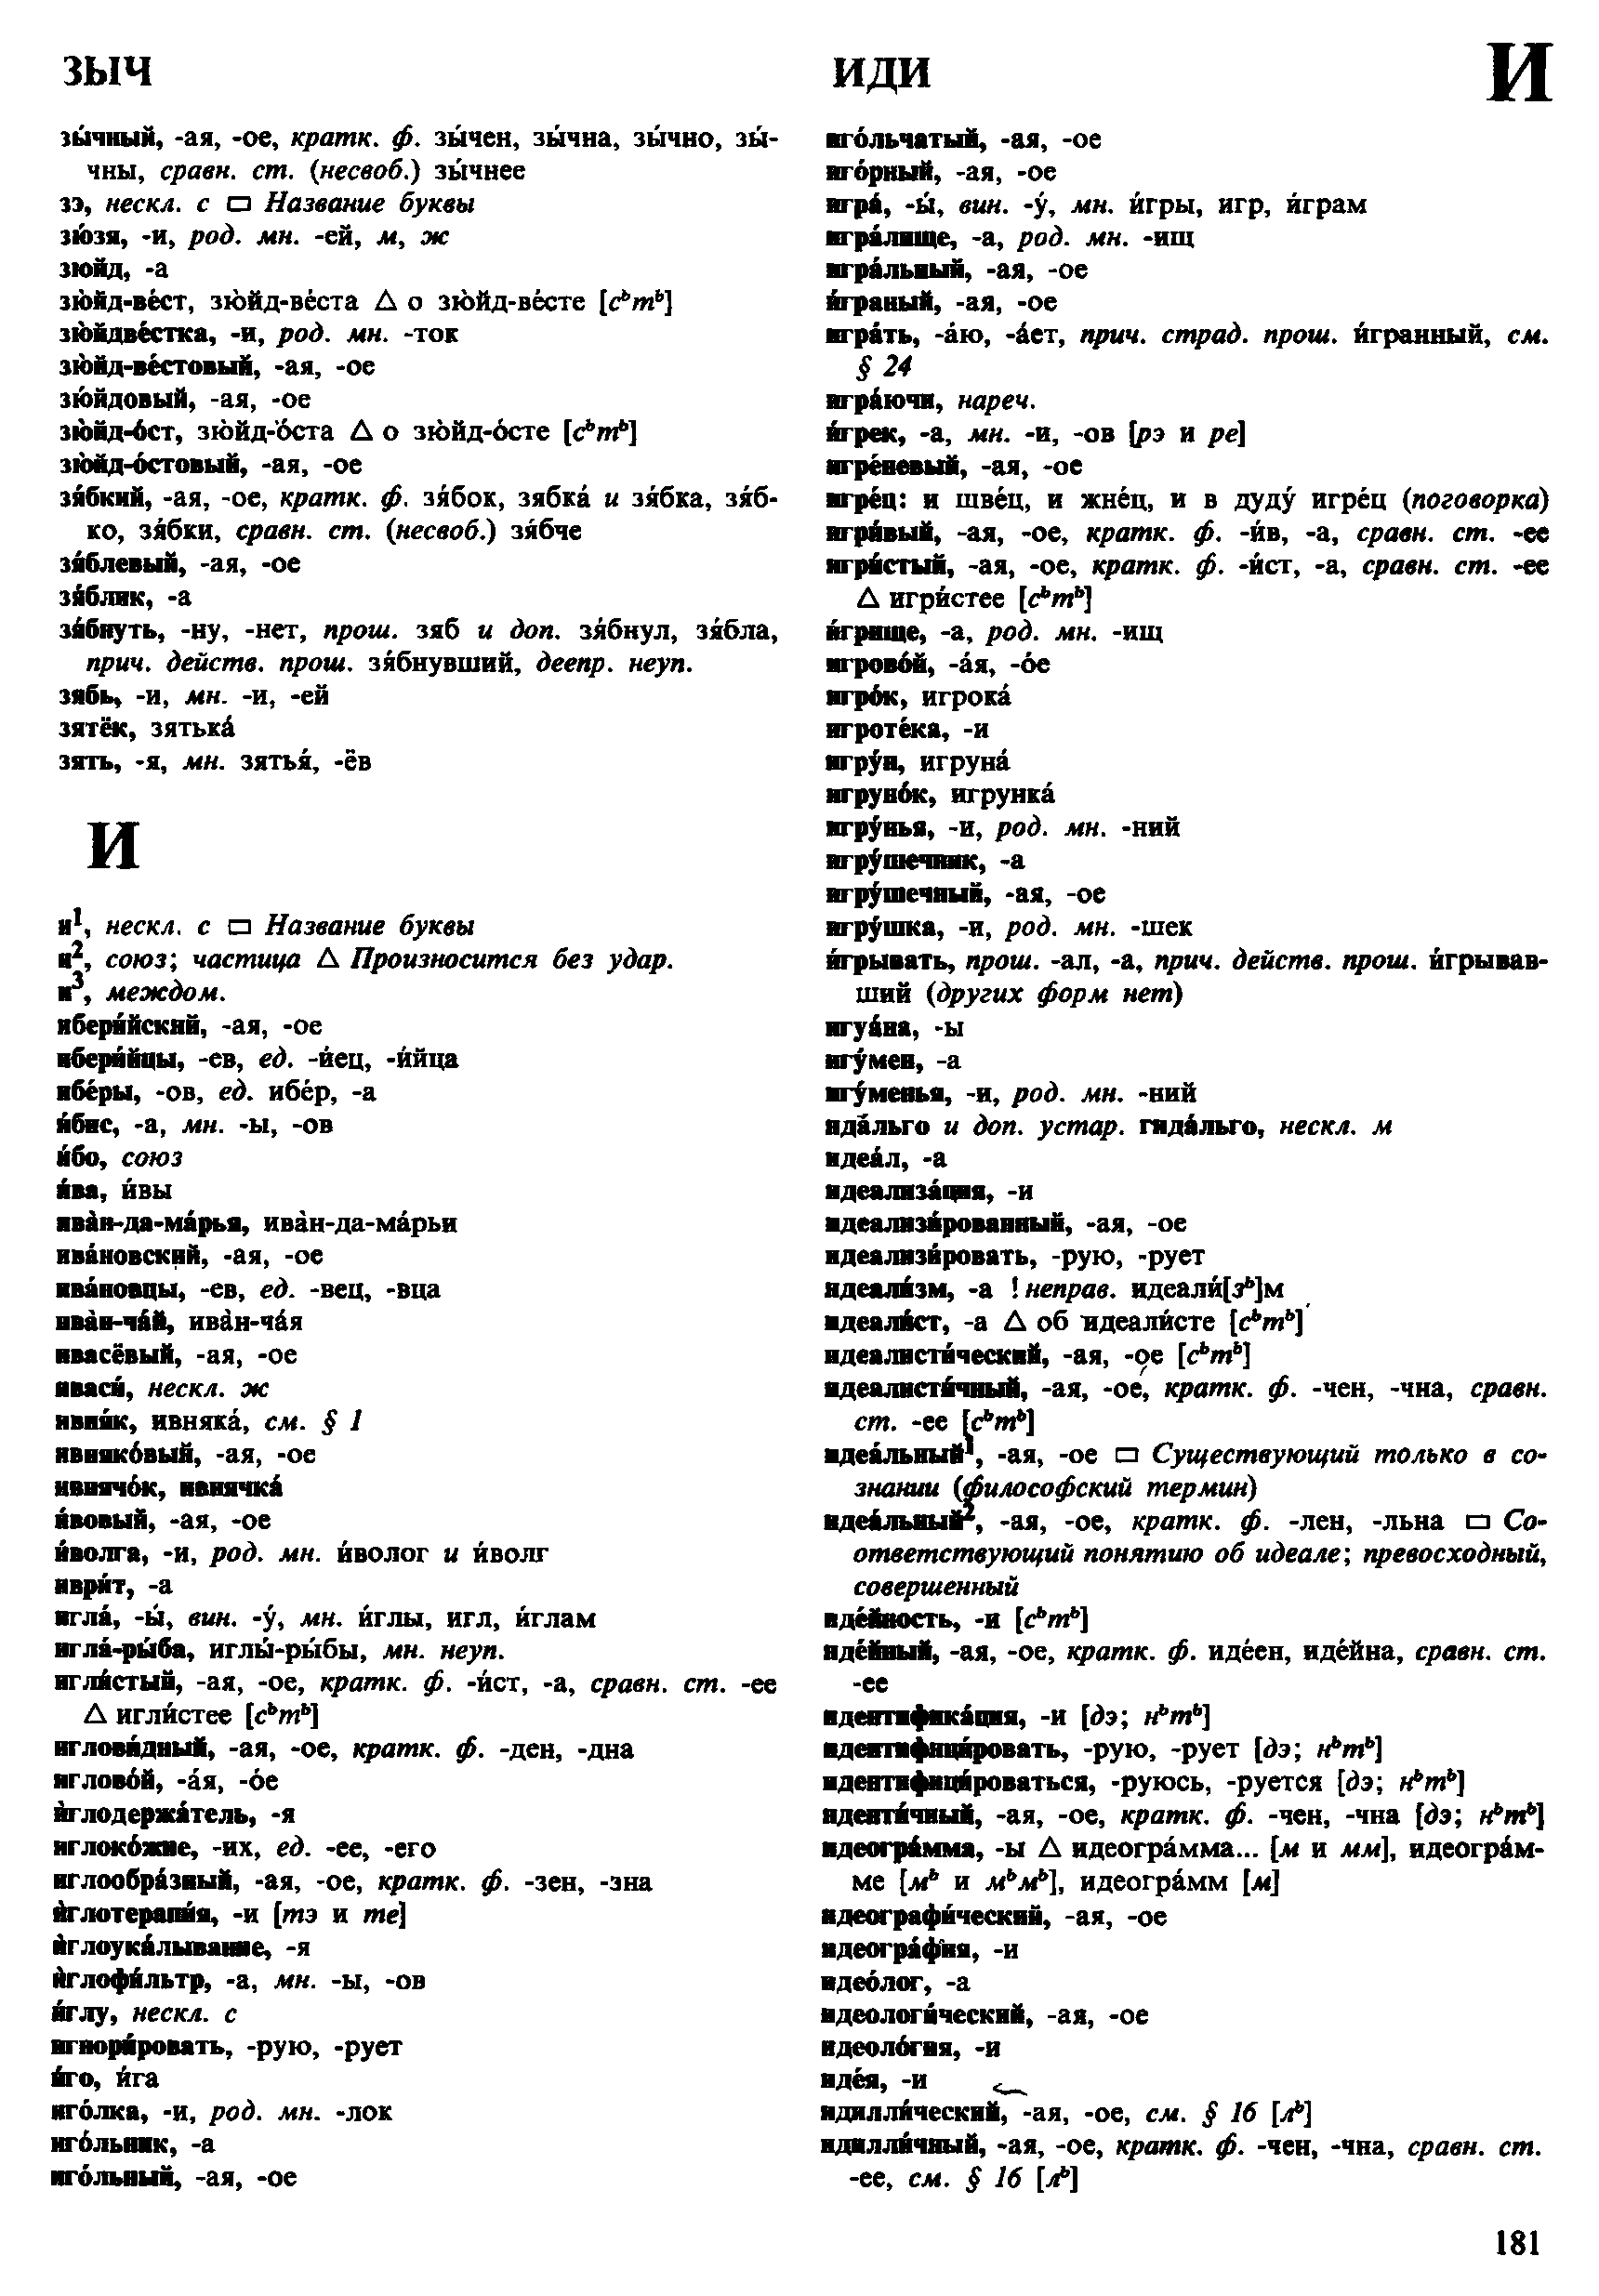 Фотокопия pdf / скан страницы 181 орфоэпического словаря под редакцией Аванесова (4 издание, 1988 год)